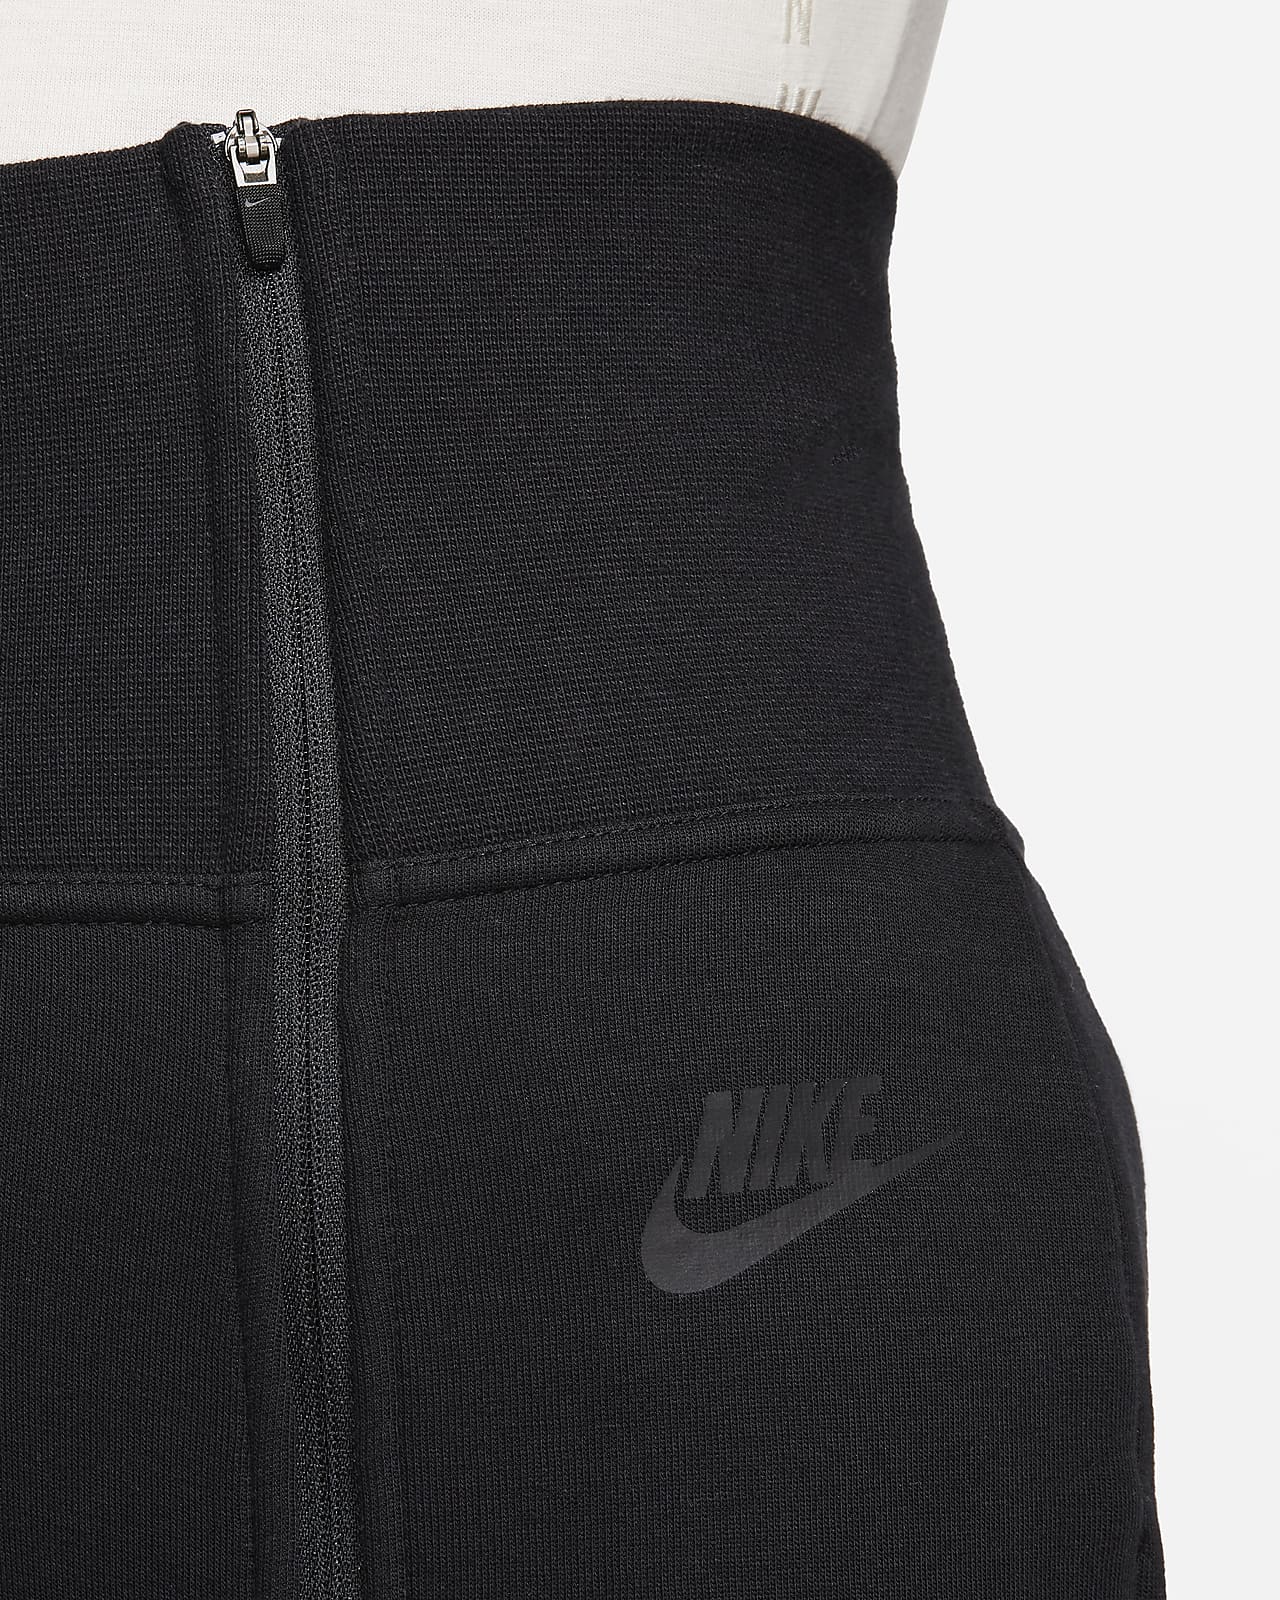 Nike NSW Shield Dri-Fit Tech Black/3M Pants Women's Sz XS NEW BV3311-010  $110